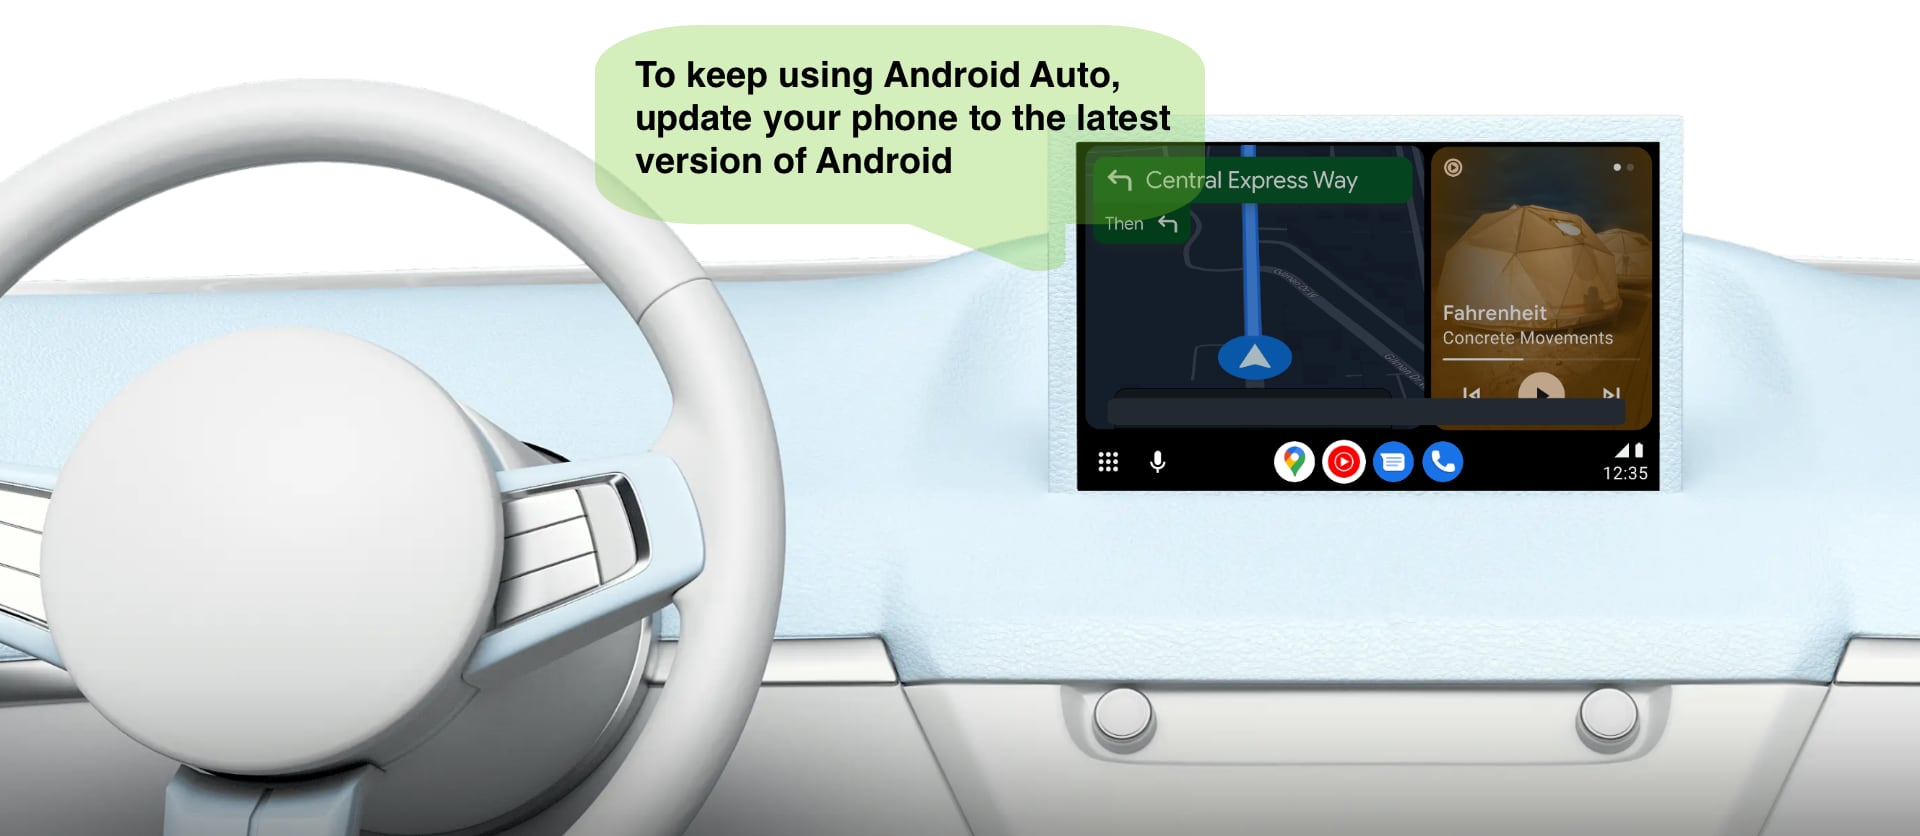 Android Auto ne fonctionnera bientôt plus sur les anciens smartphones Android